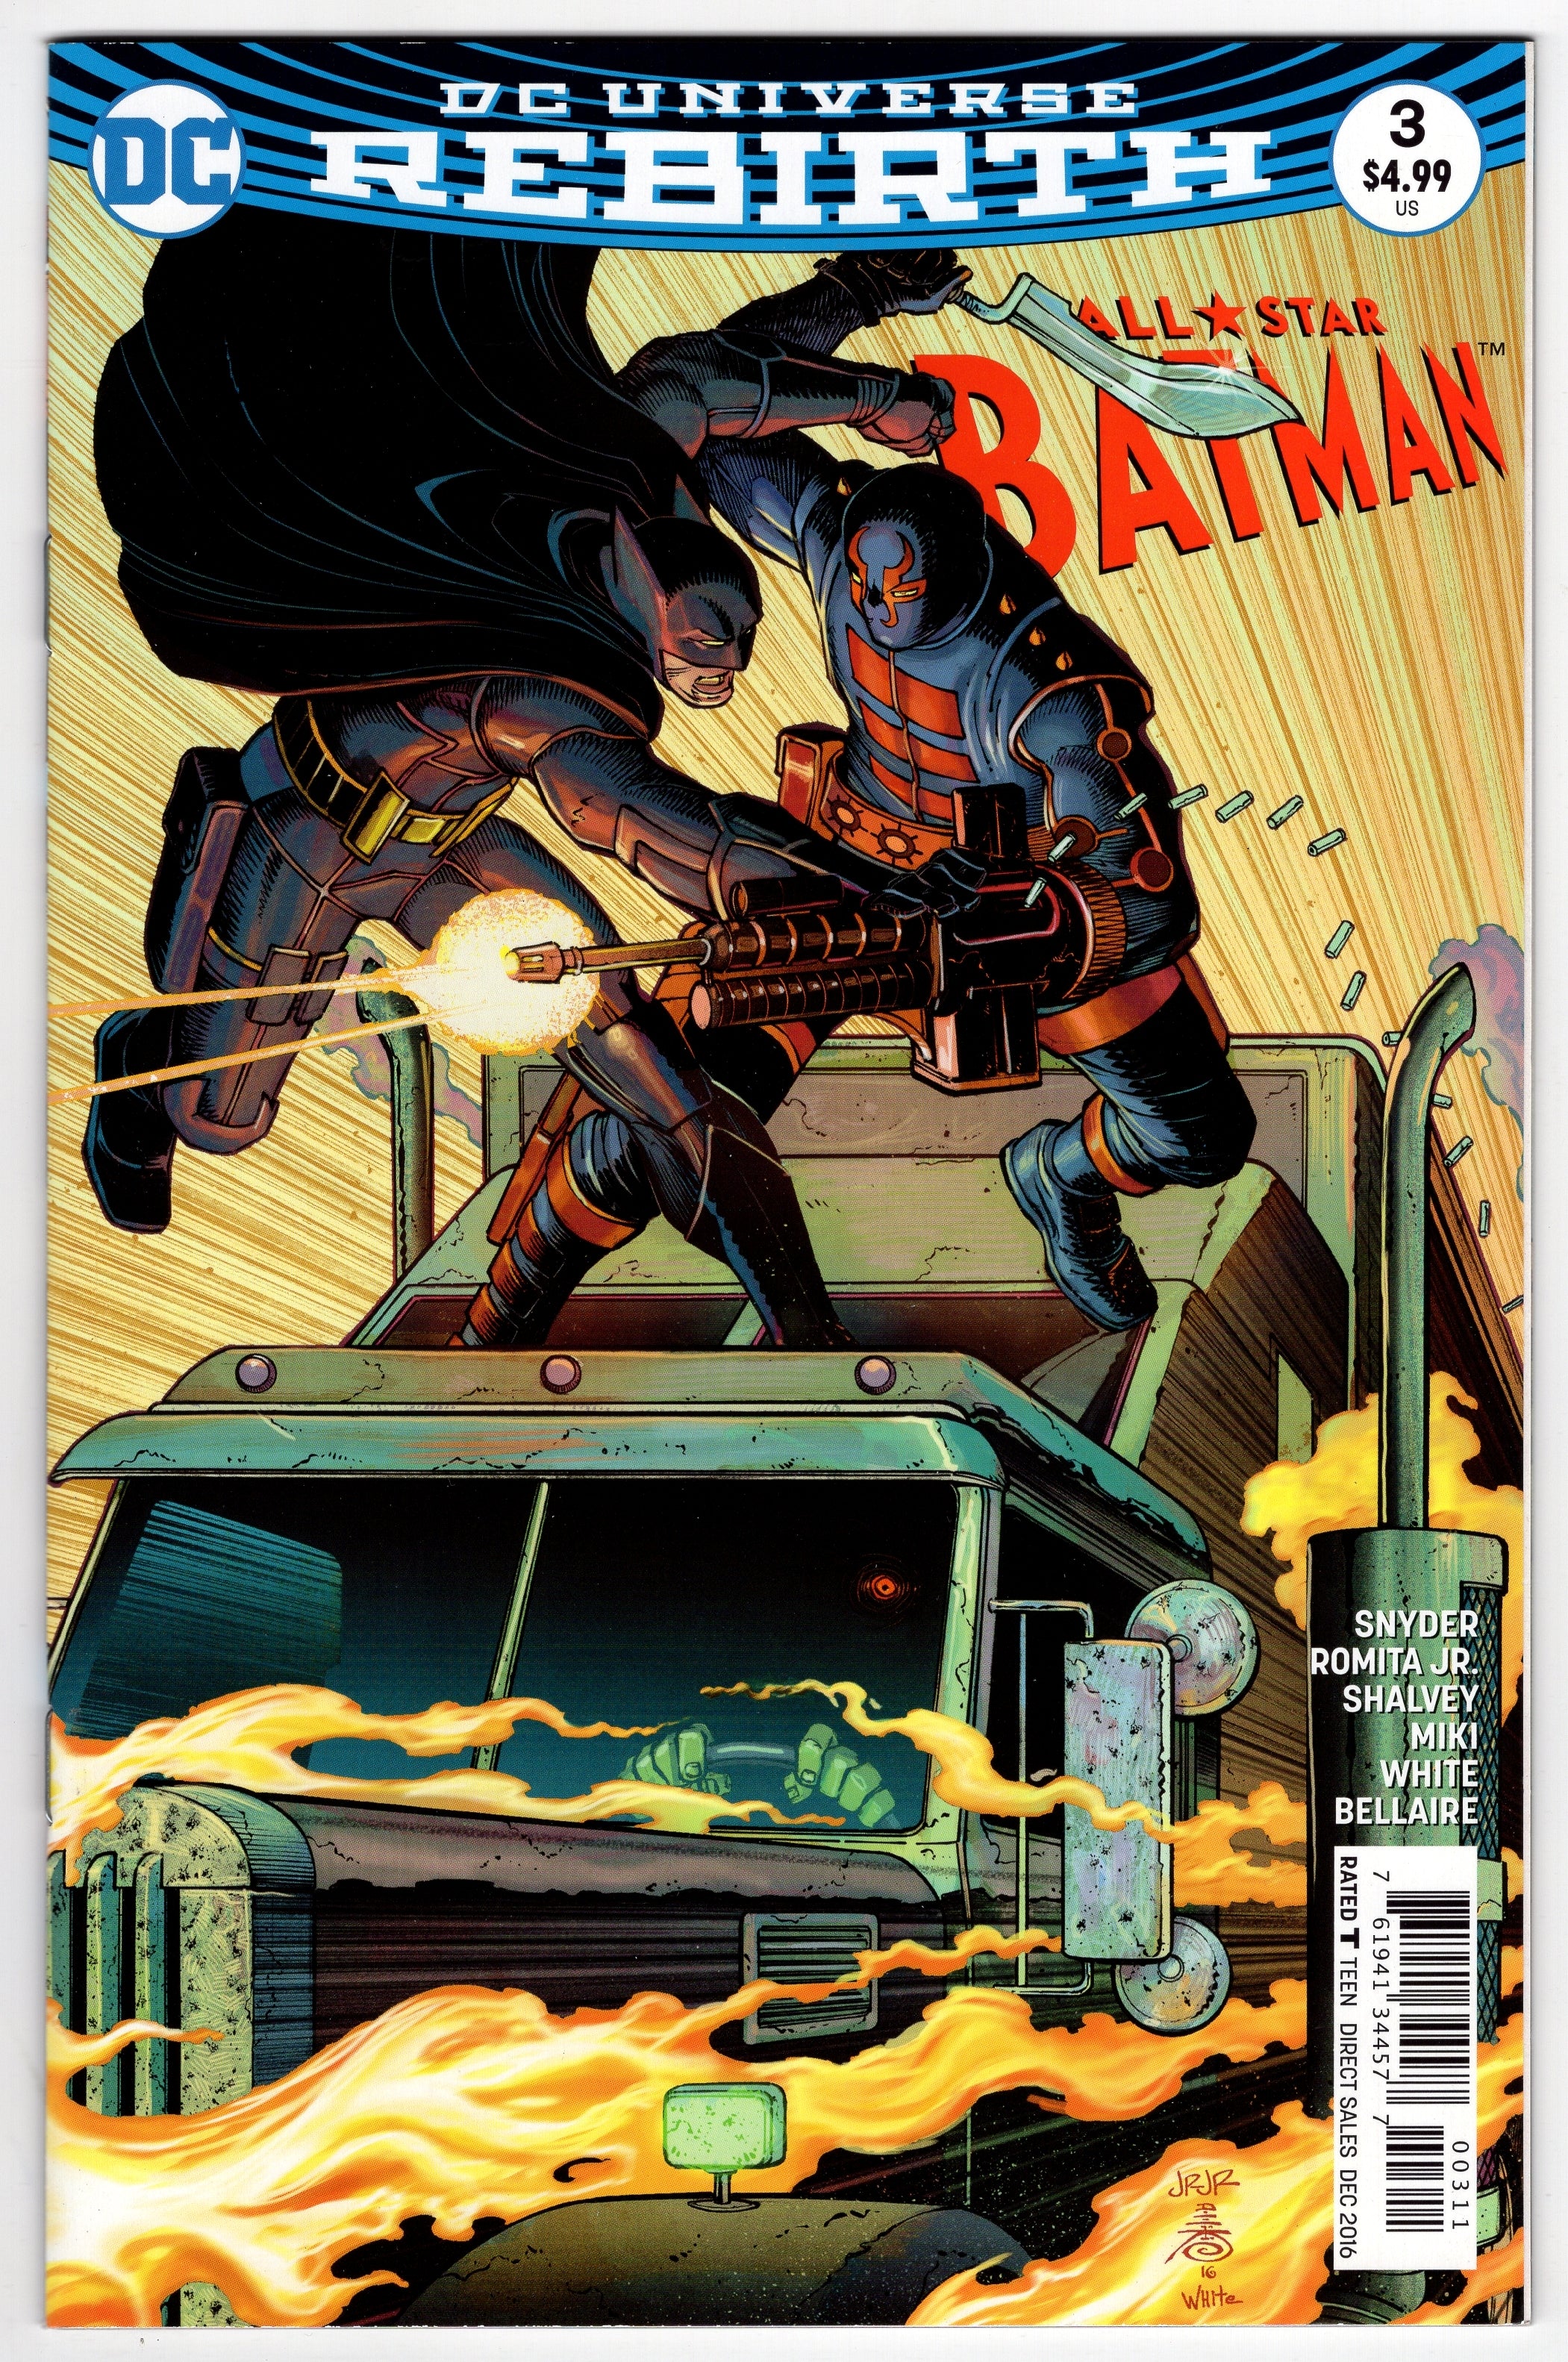 ALL STAR BATMAN #3 | Packrat Comics